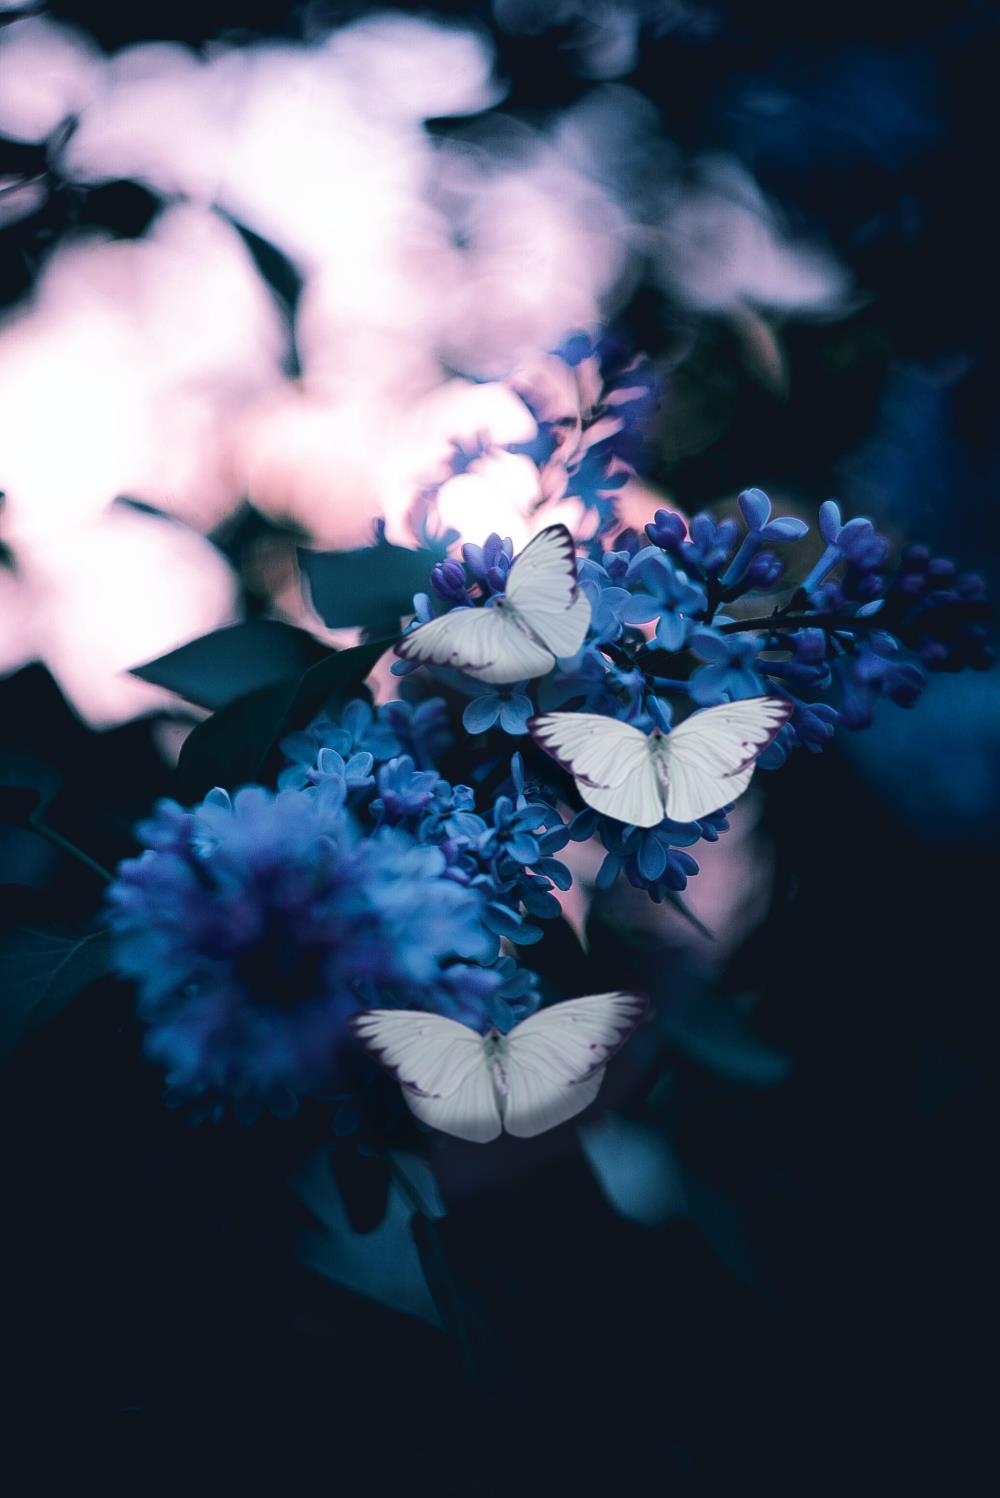 White butterflies on blue flowers